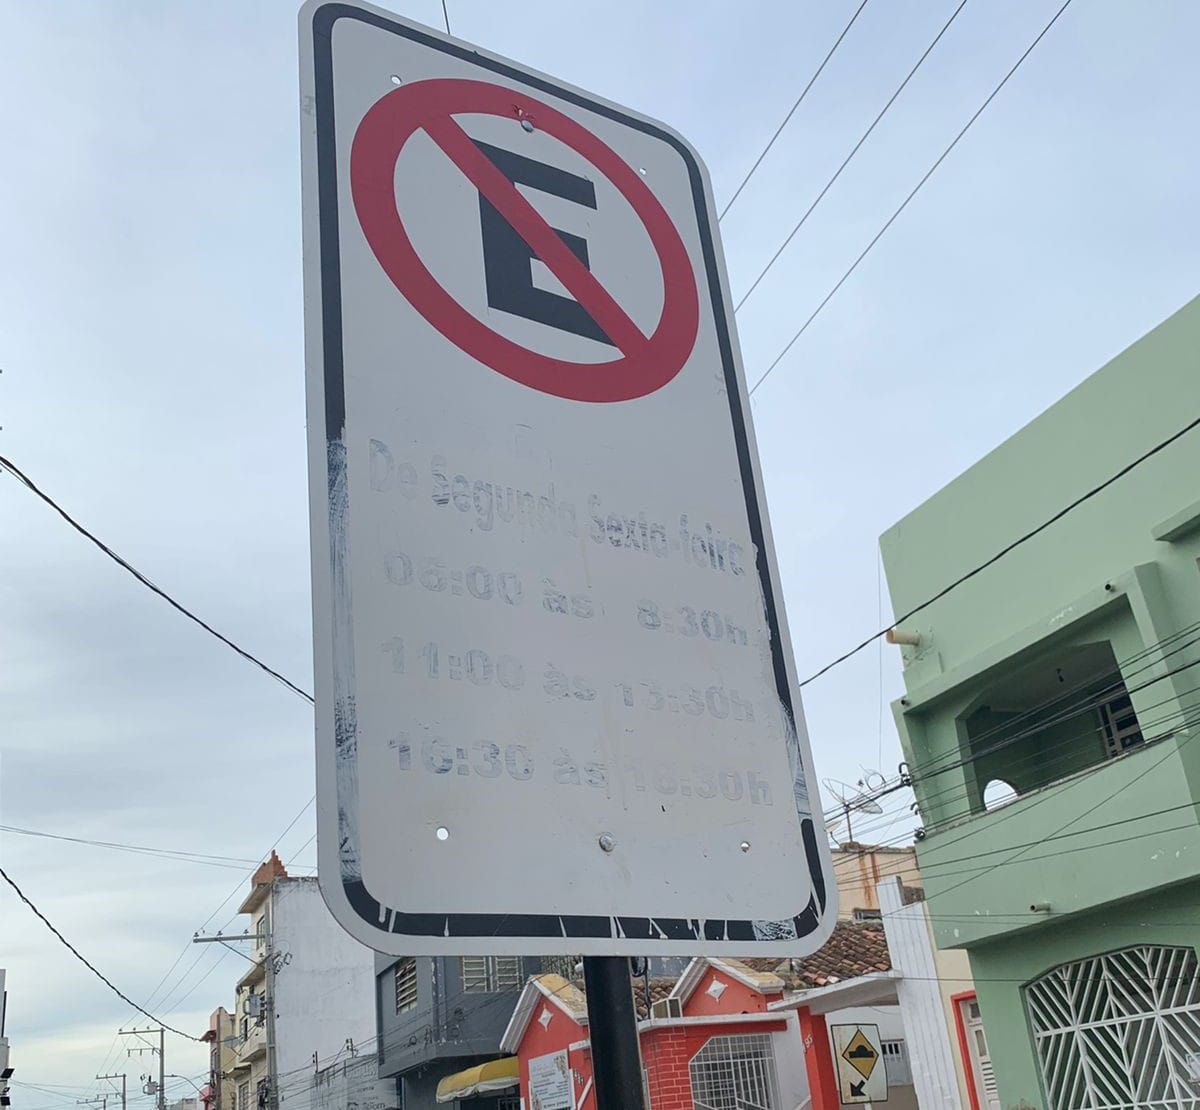 Após placa ser danificada, Prefeitura de Juazeiro volta a pedir colaboração para evitar vandalismo em sinalização de trânsito na cidade